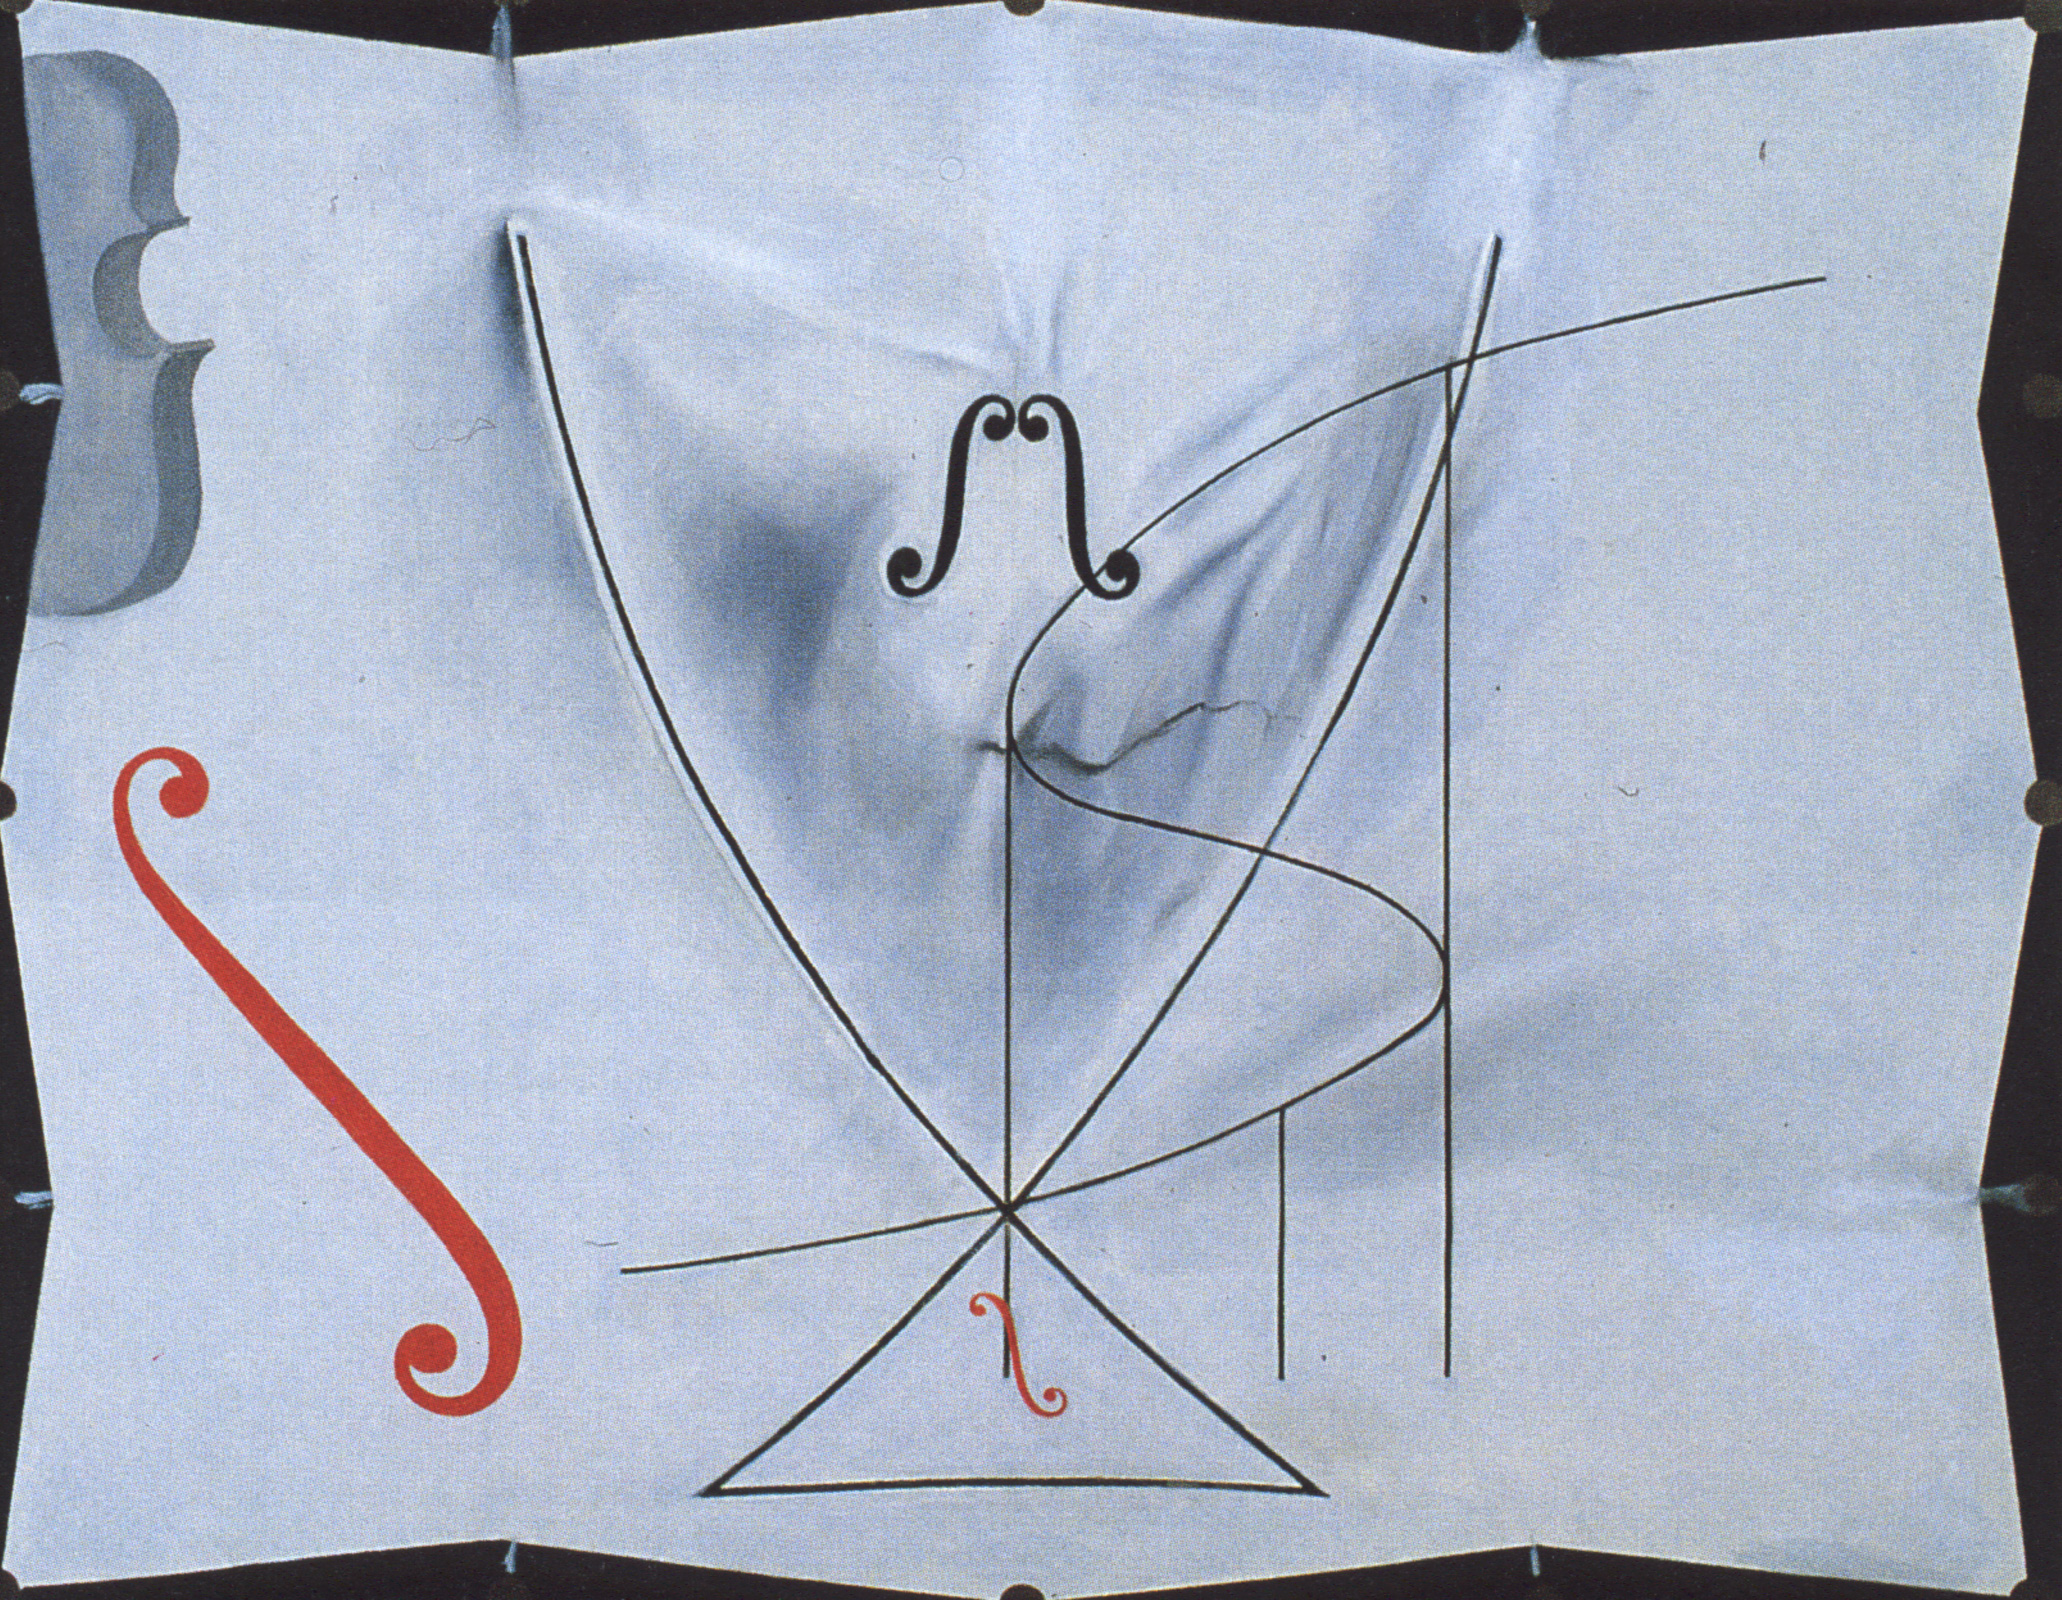 Cauda da Andorinha by Salvador Dalí - 1983 